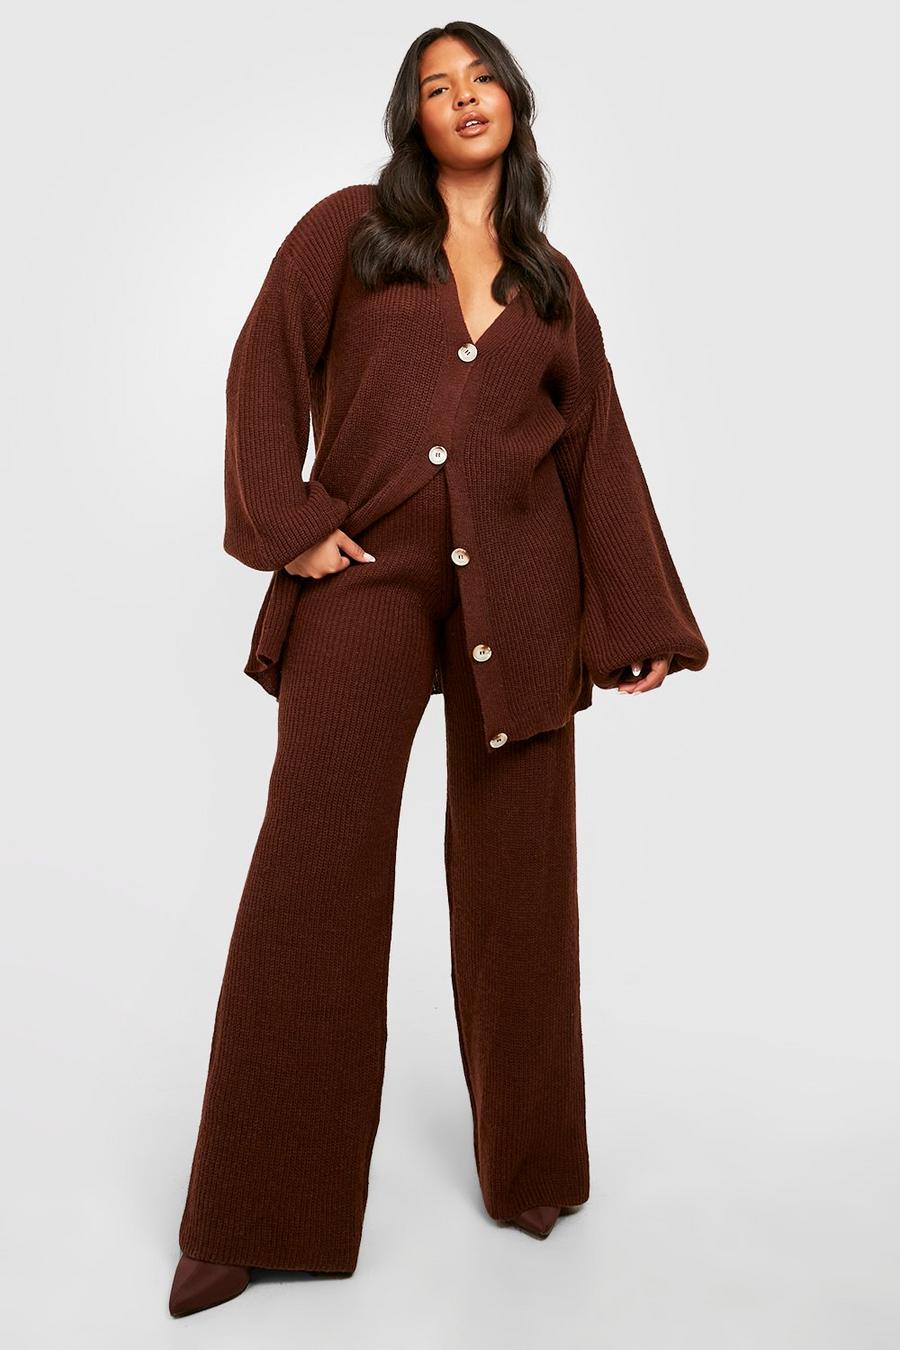 Cardigan coordinato Plus Size in maglia spessa, Chocolate marrone